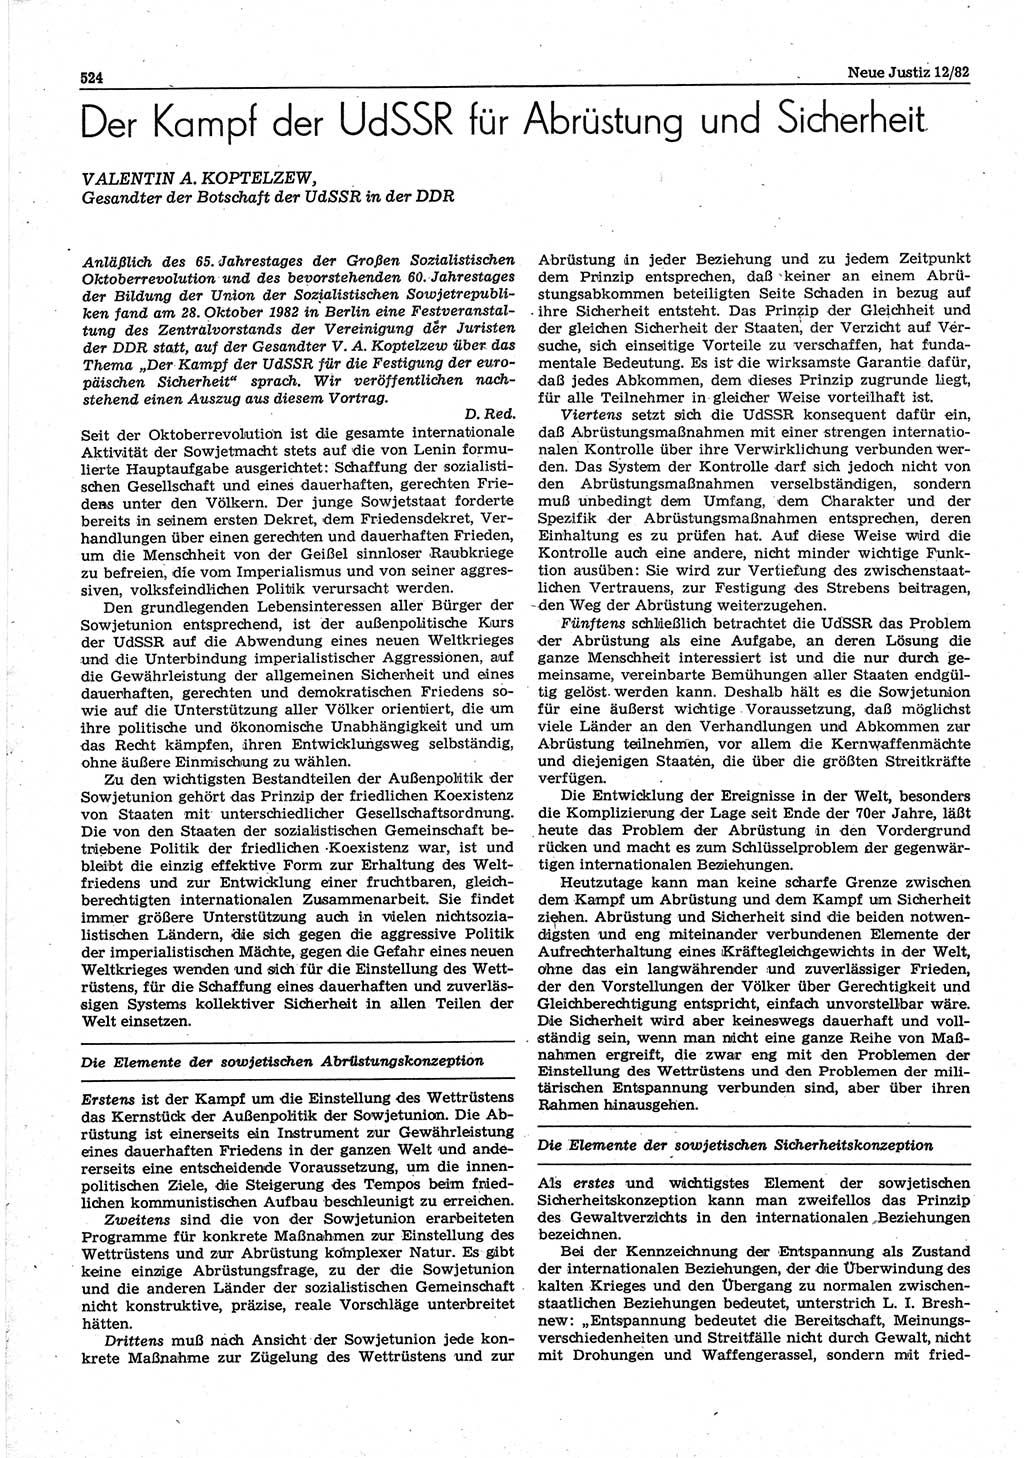 Neue Justiz (NJ), Zeitschrift für sozialistisches Recht und Gesetzlichkeit [Deutsche Demokratische Republik (DDR)], 36. Jahrgang 1982, Seite 524 (NJ DDR 1982, S. 524)